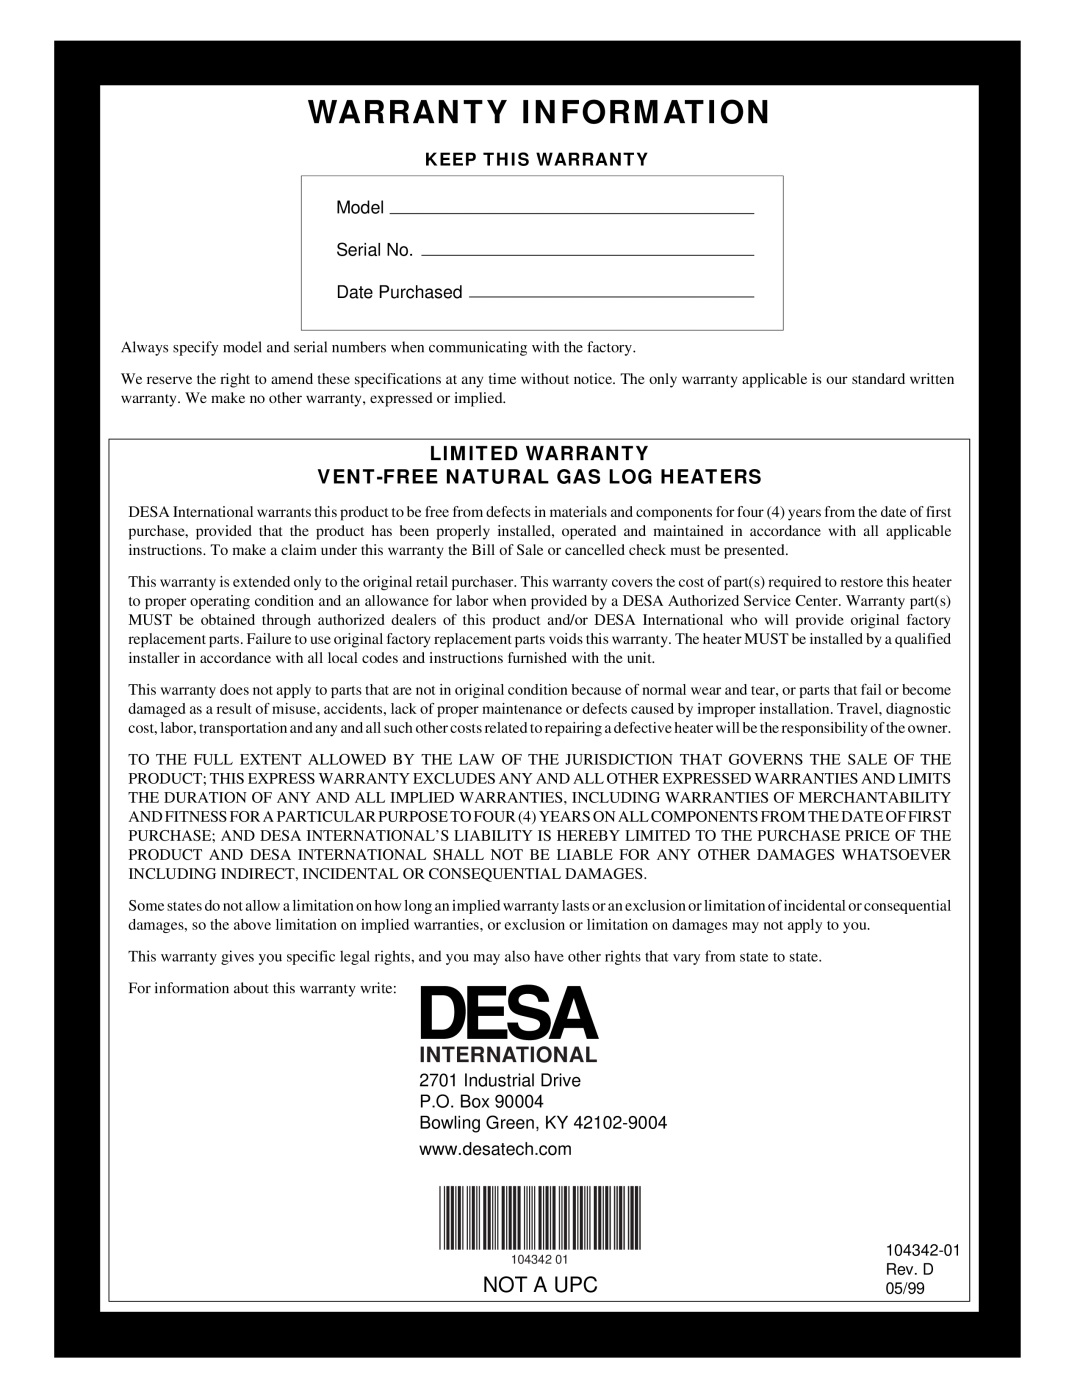 Desa GAS LOG HEATER International, Limited Warranty Vent-Freenatural Gas Log Heaters, Warranty Information, Not A Upc 